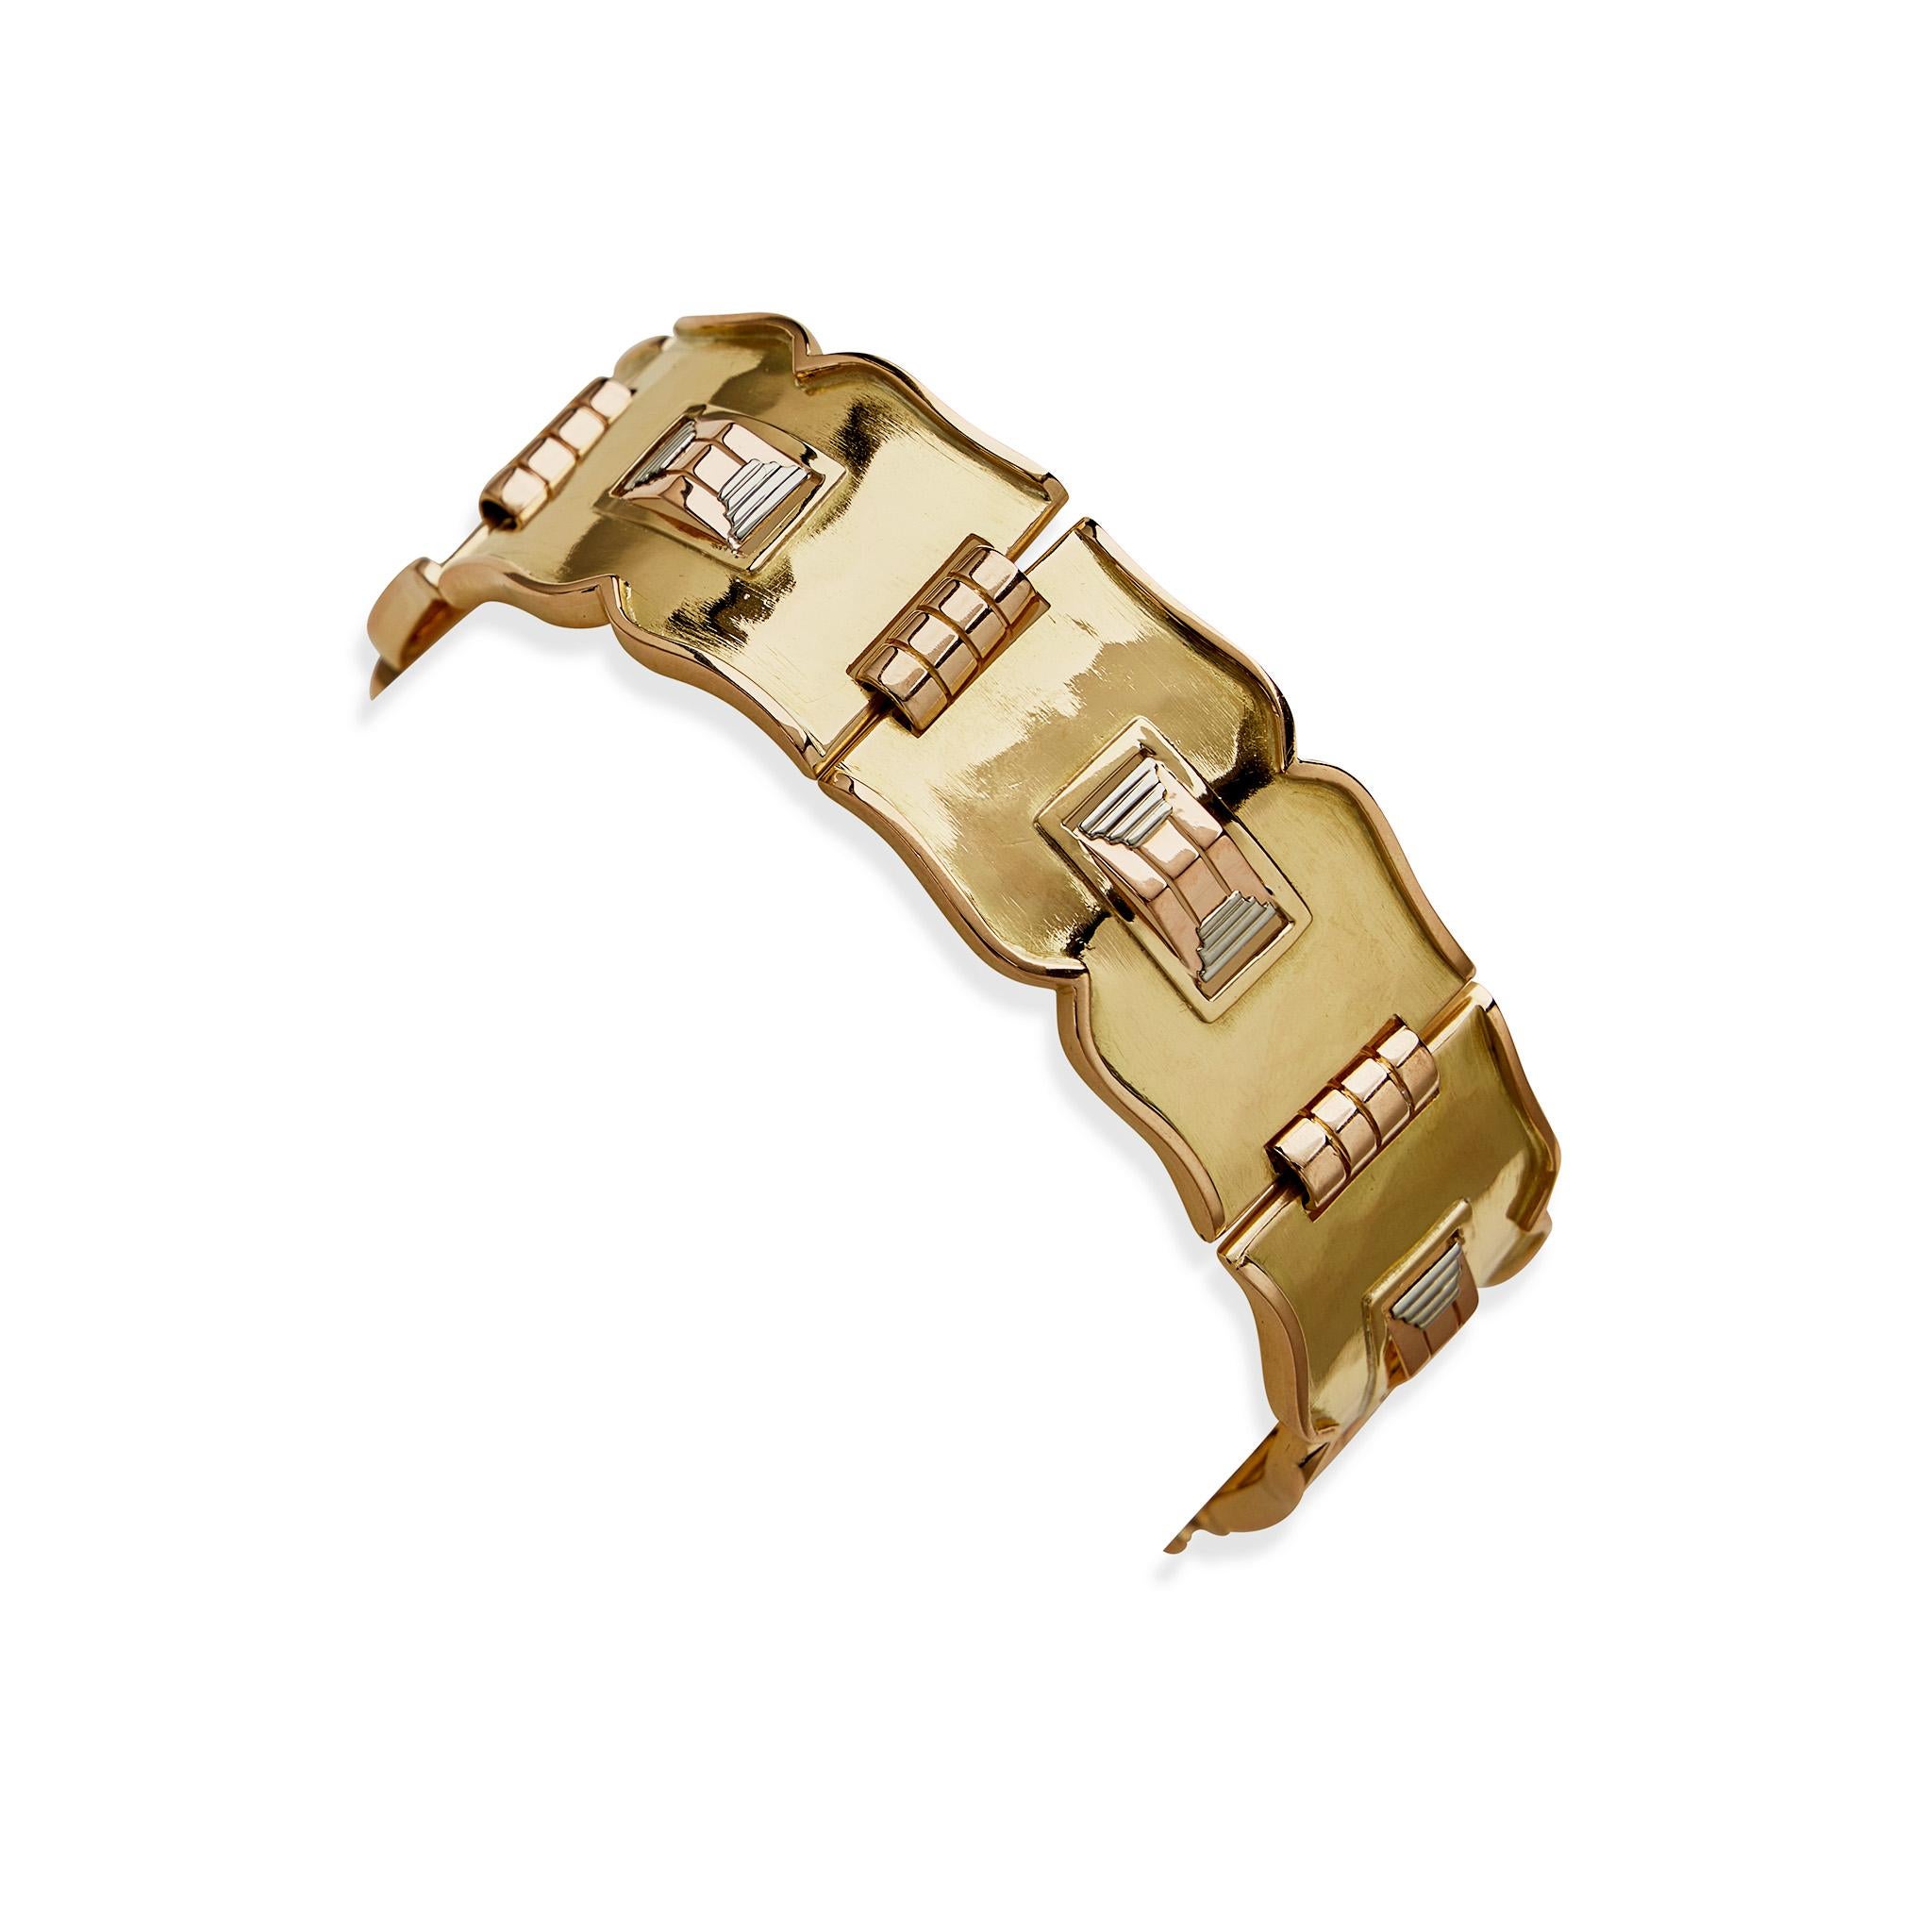 Dieses modernistische Armband des französischen Schmuckkünstlers Després besteht aus dreifarbigem 18-karätigem Gold und stammt aus den Jahren 1935-1940. Es besteht aus einer Reihe von gewölbten, taillierten Plaketten aus Gelbgold mit dezent